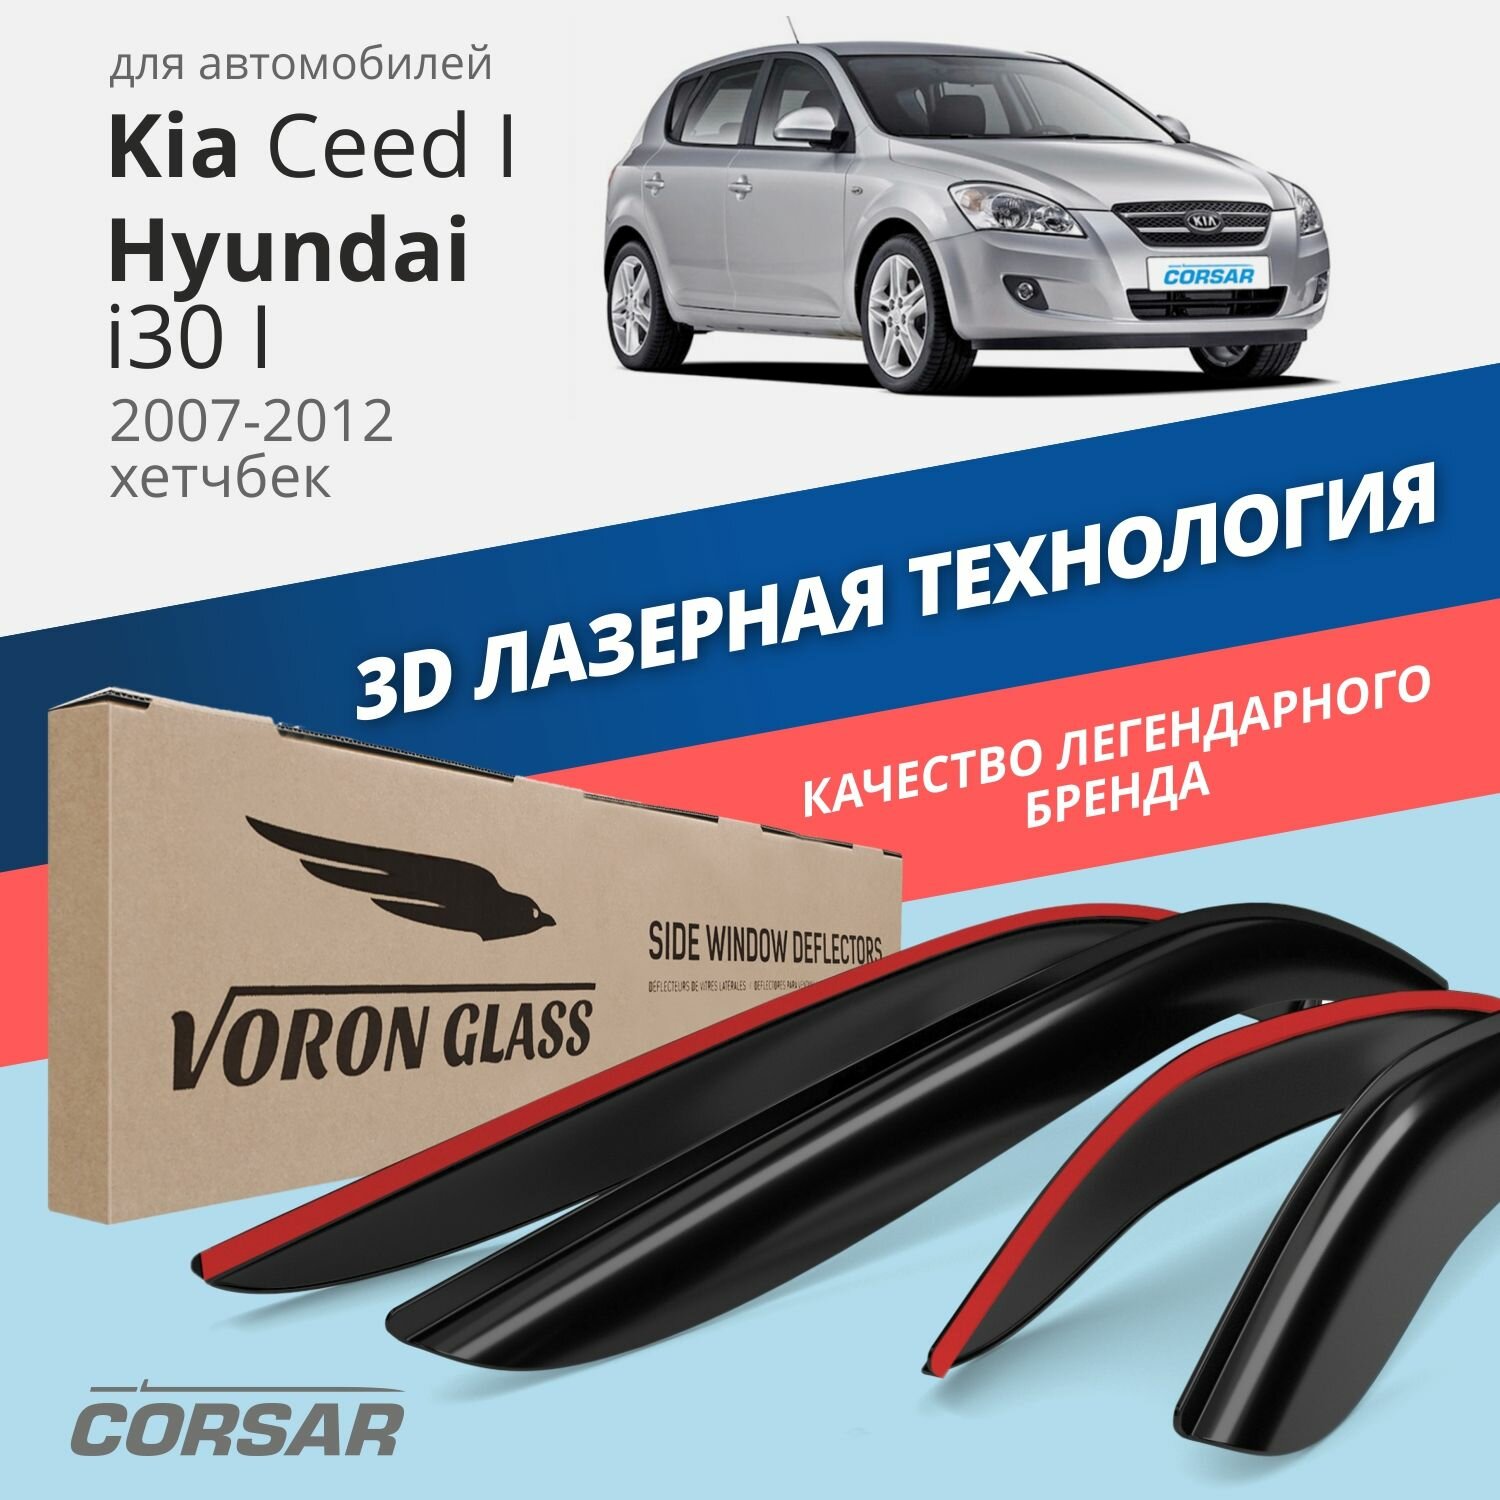 Дефлекторы окон Voron Glass серия Corsar для Kia Ceed I 5d 2007-2012/Hyundai i30 I 5d 2007-2012/хетчбек накладные 4 шт.